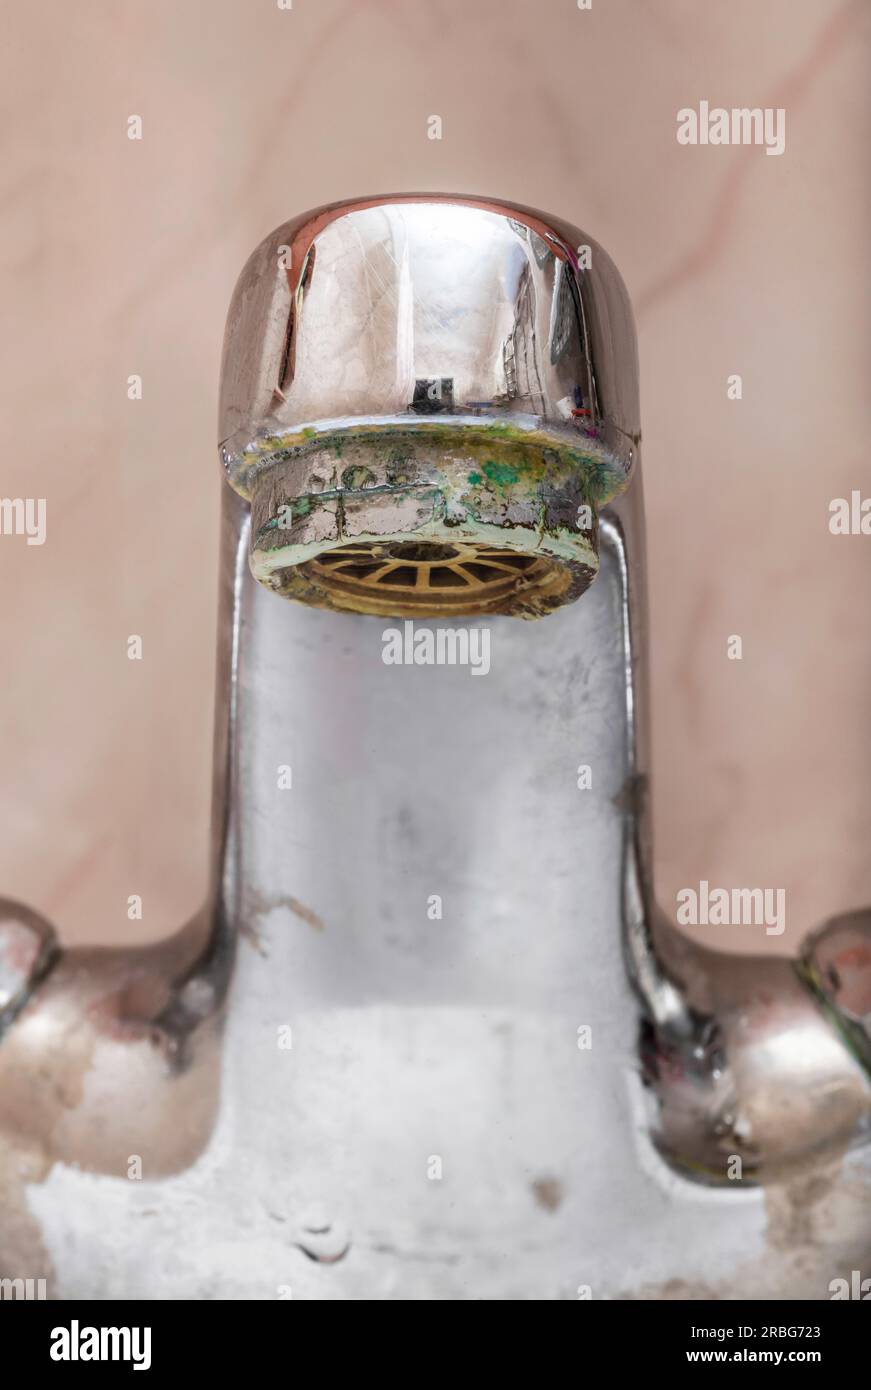 Vertikales Makrobild eines geschlossenen Wasserhahns über einem weißen Waschbecken im Badezimmer Stockfoto